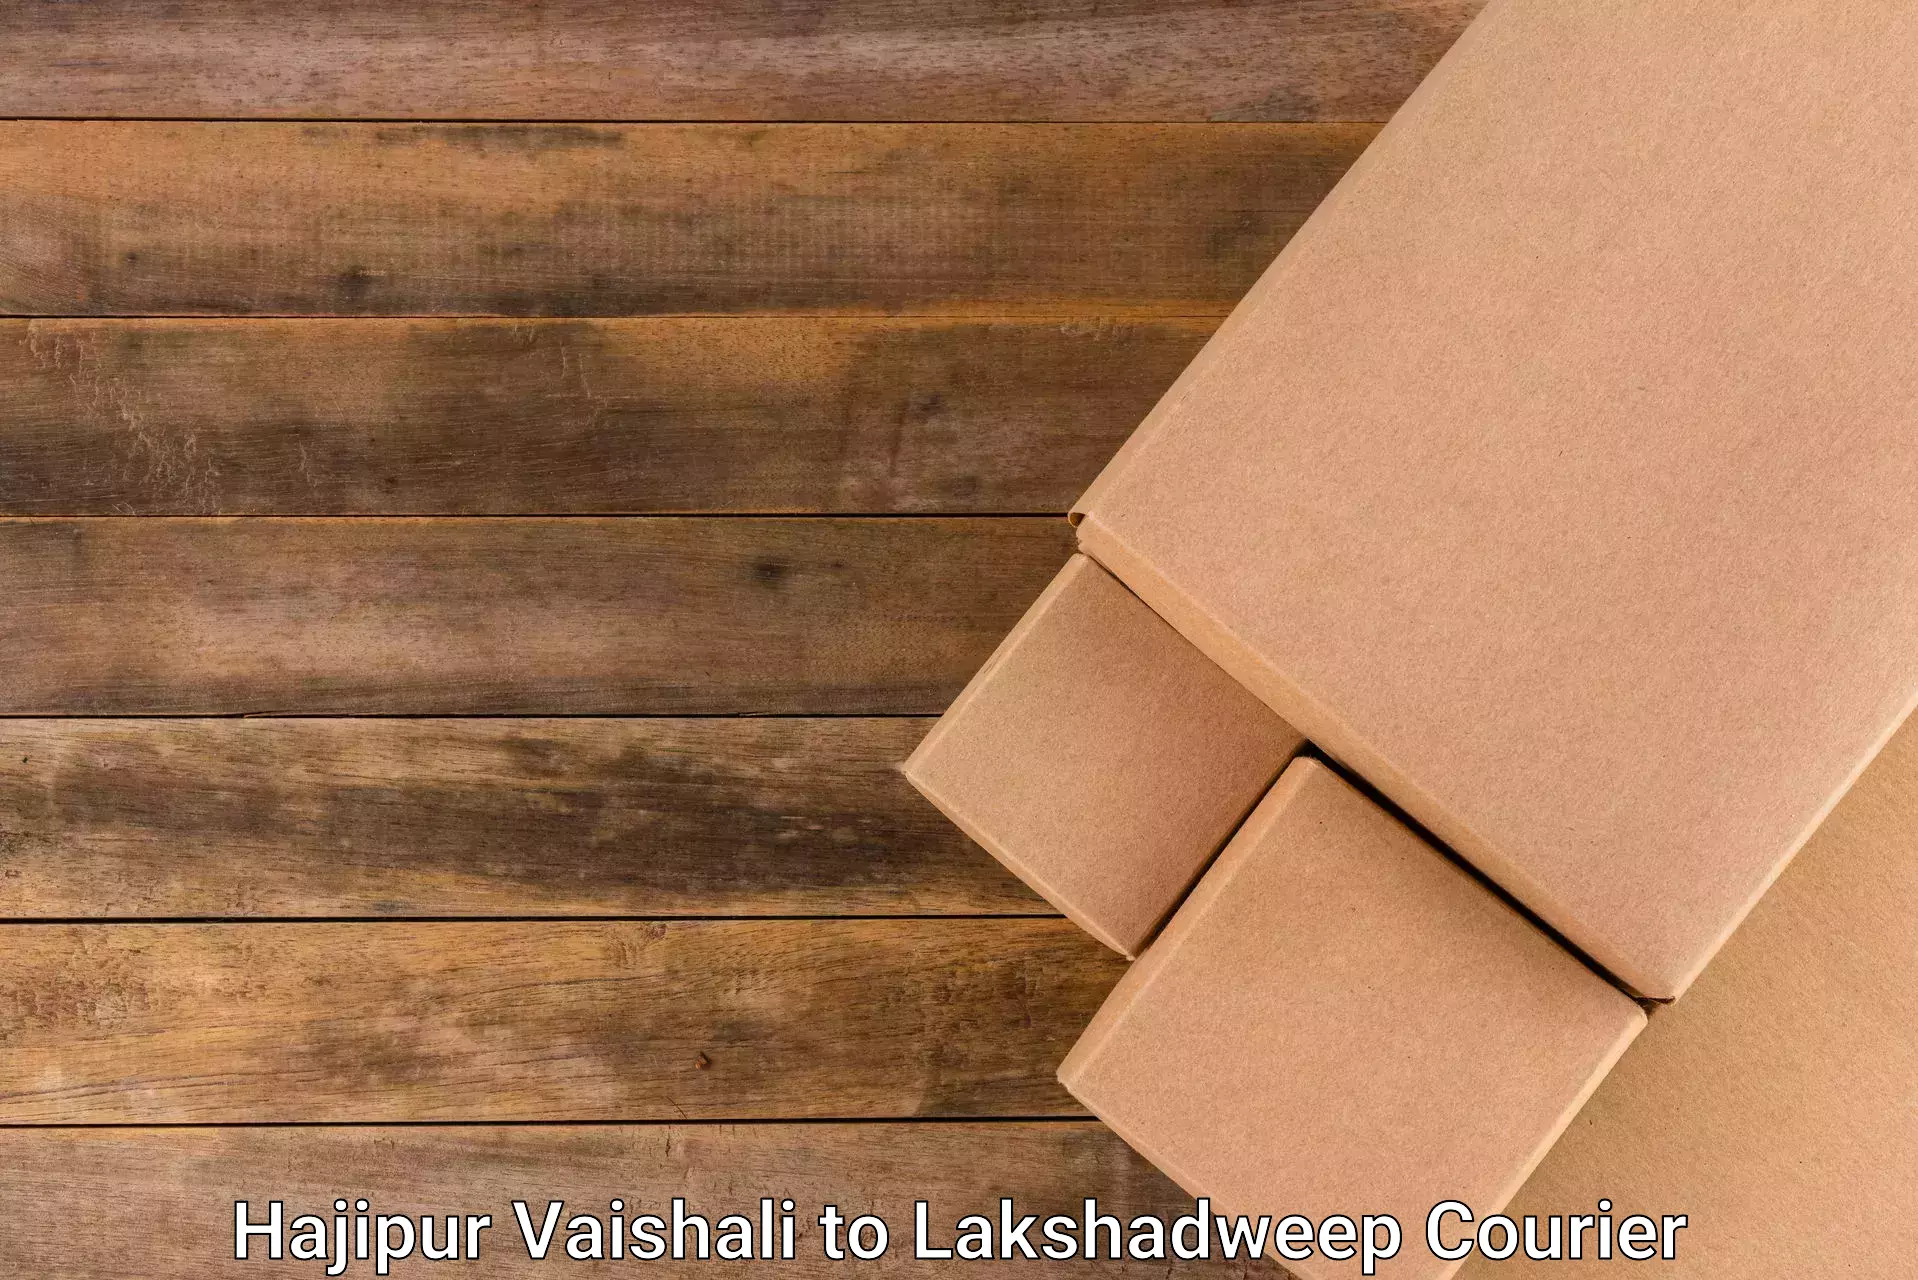 Cost-effective shipping solutions Hajipur Vaishali to Lakshadweep